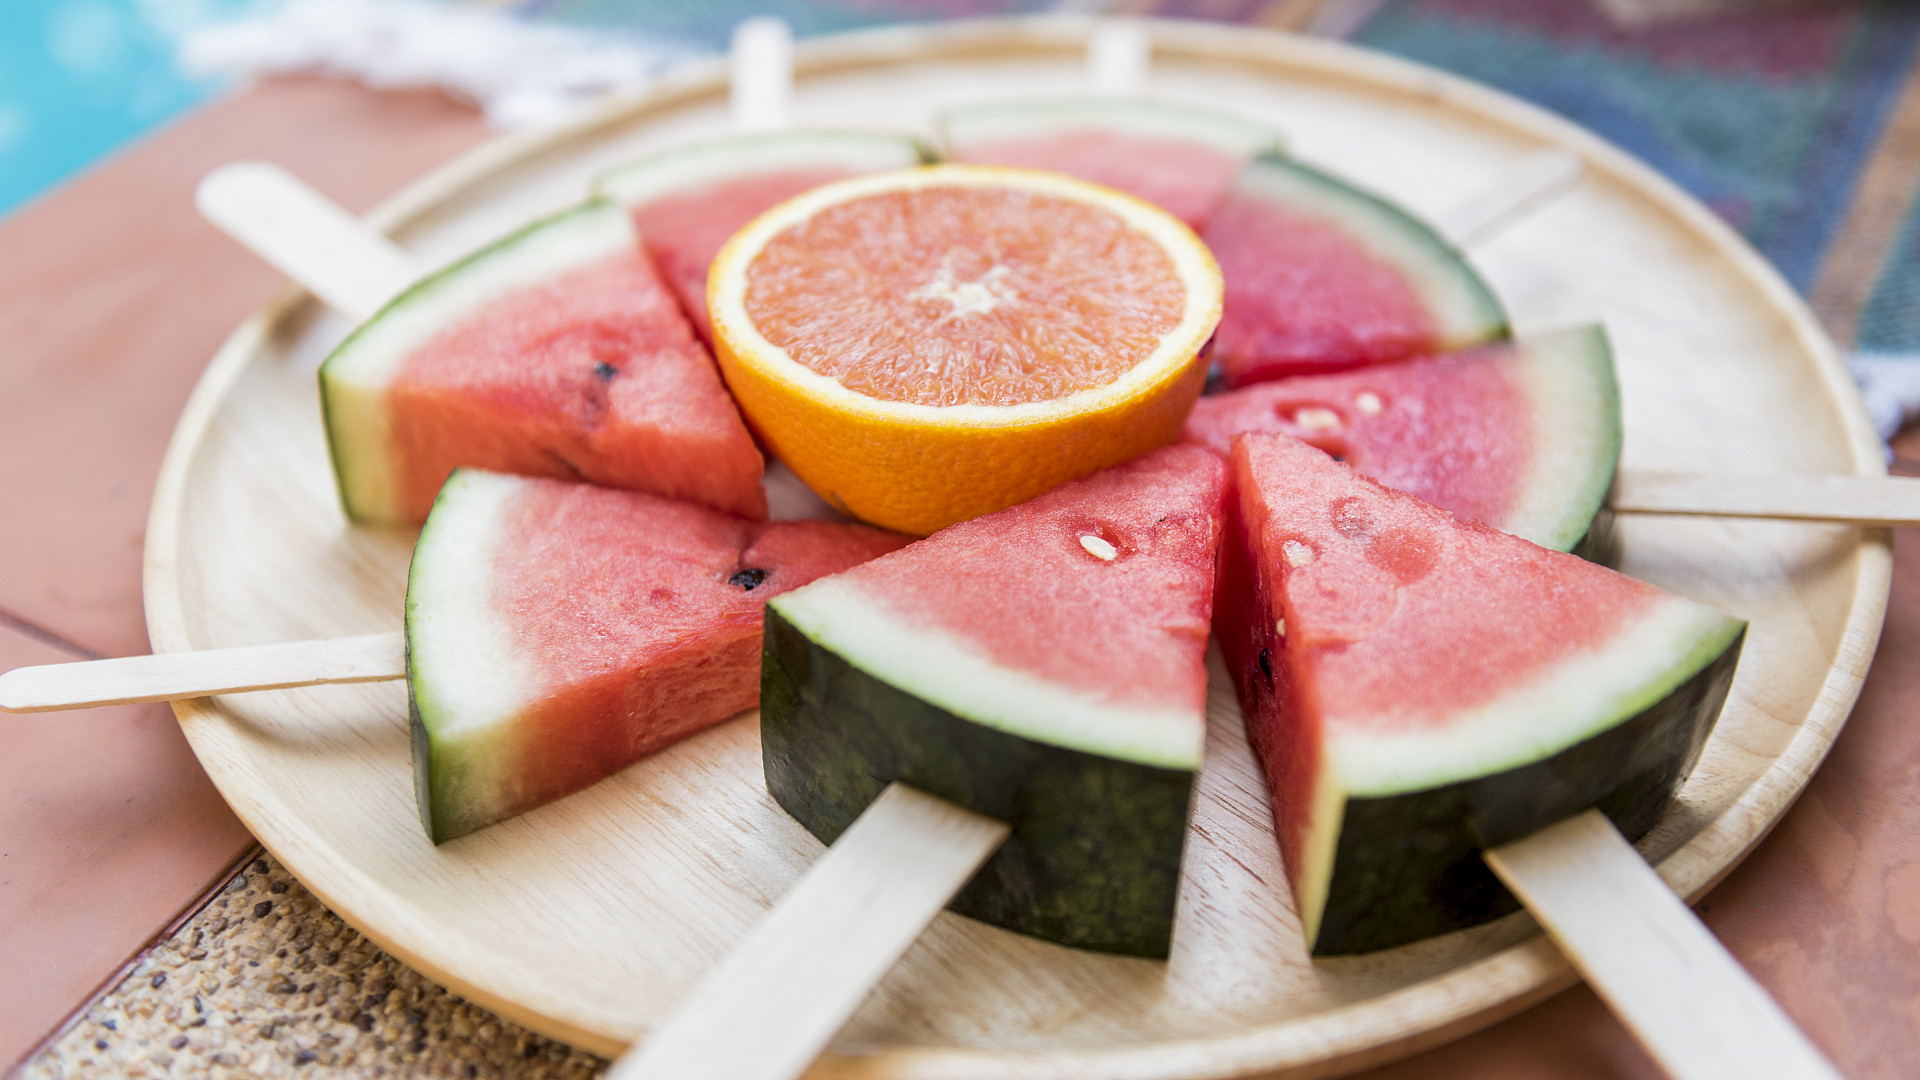 jak poznat dobrý meloun? plnou zralost a tak akorát sladkou chuť prozradí tvar plodu, barva slupky i pravidelnost pruhů